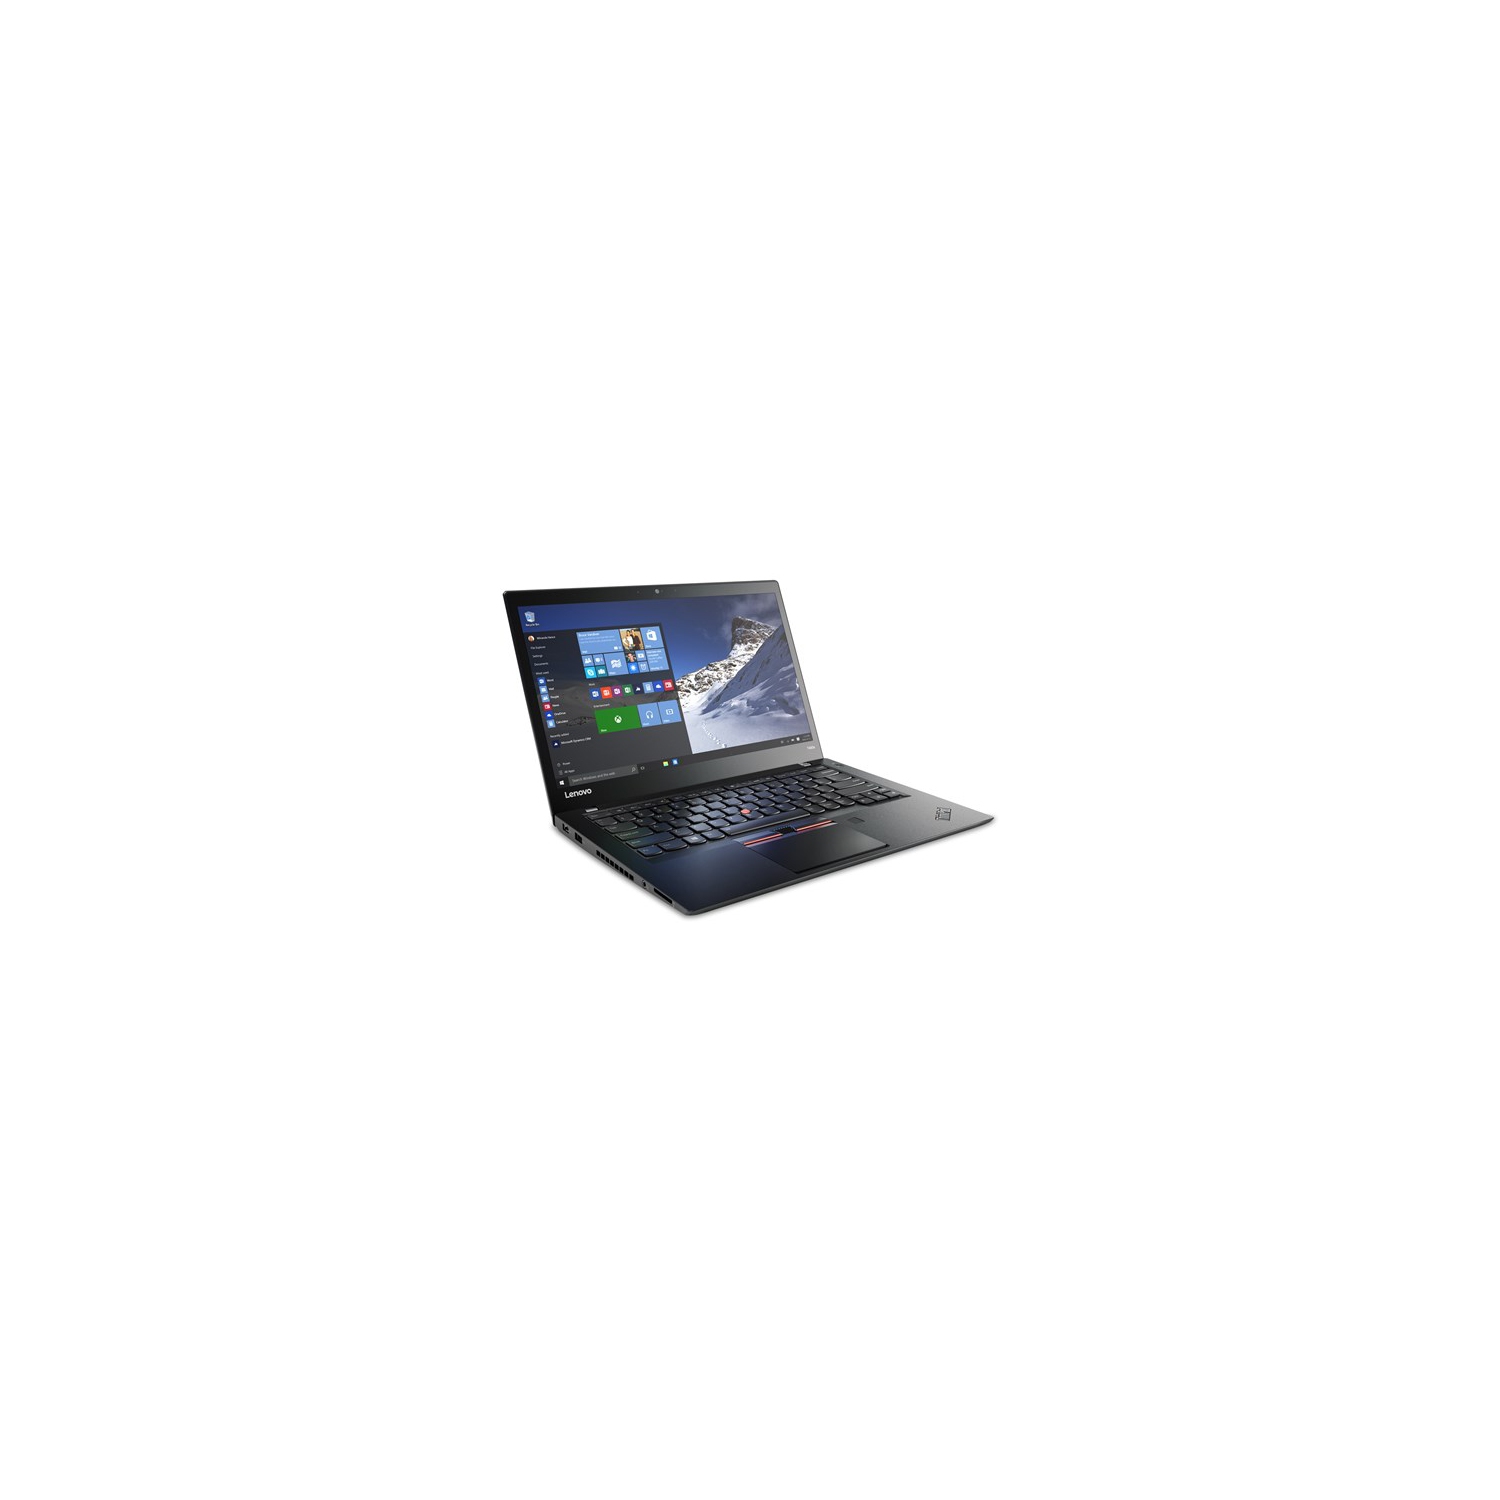 Refurbished (Good) - Lenovo ThinkPad T460S Ultra Thin 14" FHD Laptop, Intel Core i5-6300U, 8GB RAM, 256GB SSD, Windows 10 Pro - - Black